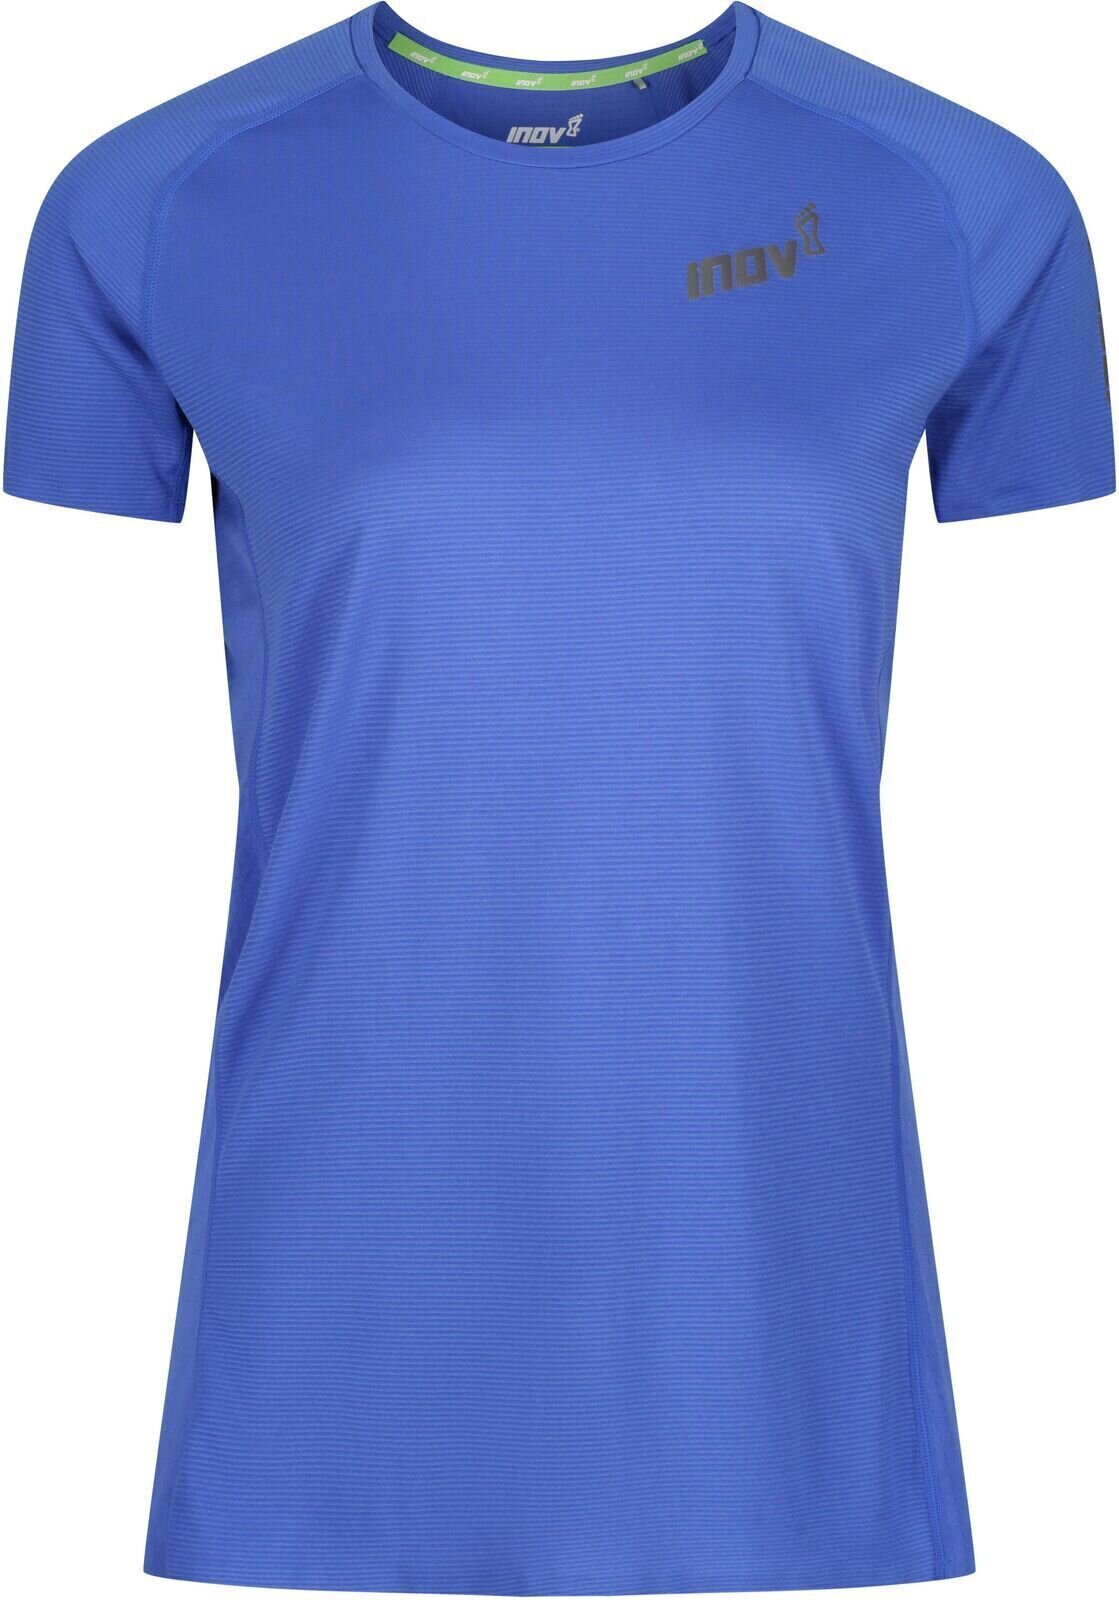 Bežecké tričko s krátkym rukávom
 Inov-8 Baso Elite Blue 34 Bežecké tričko s krátkym rukávom